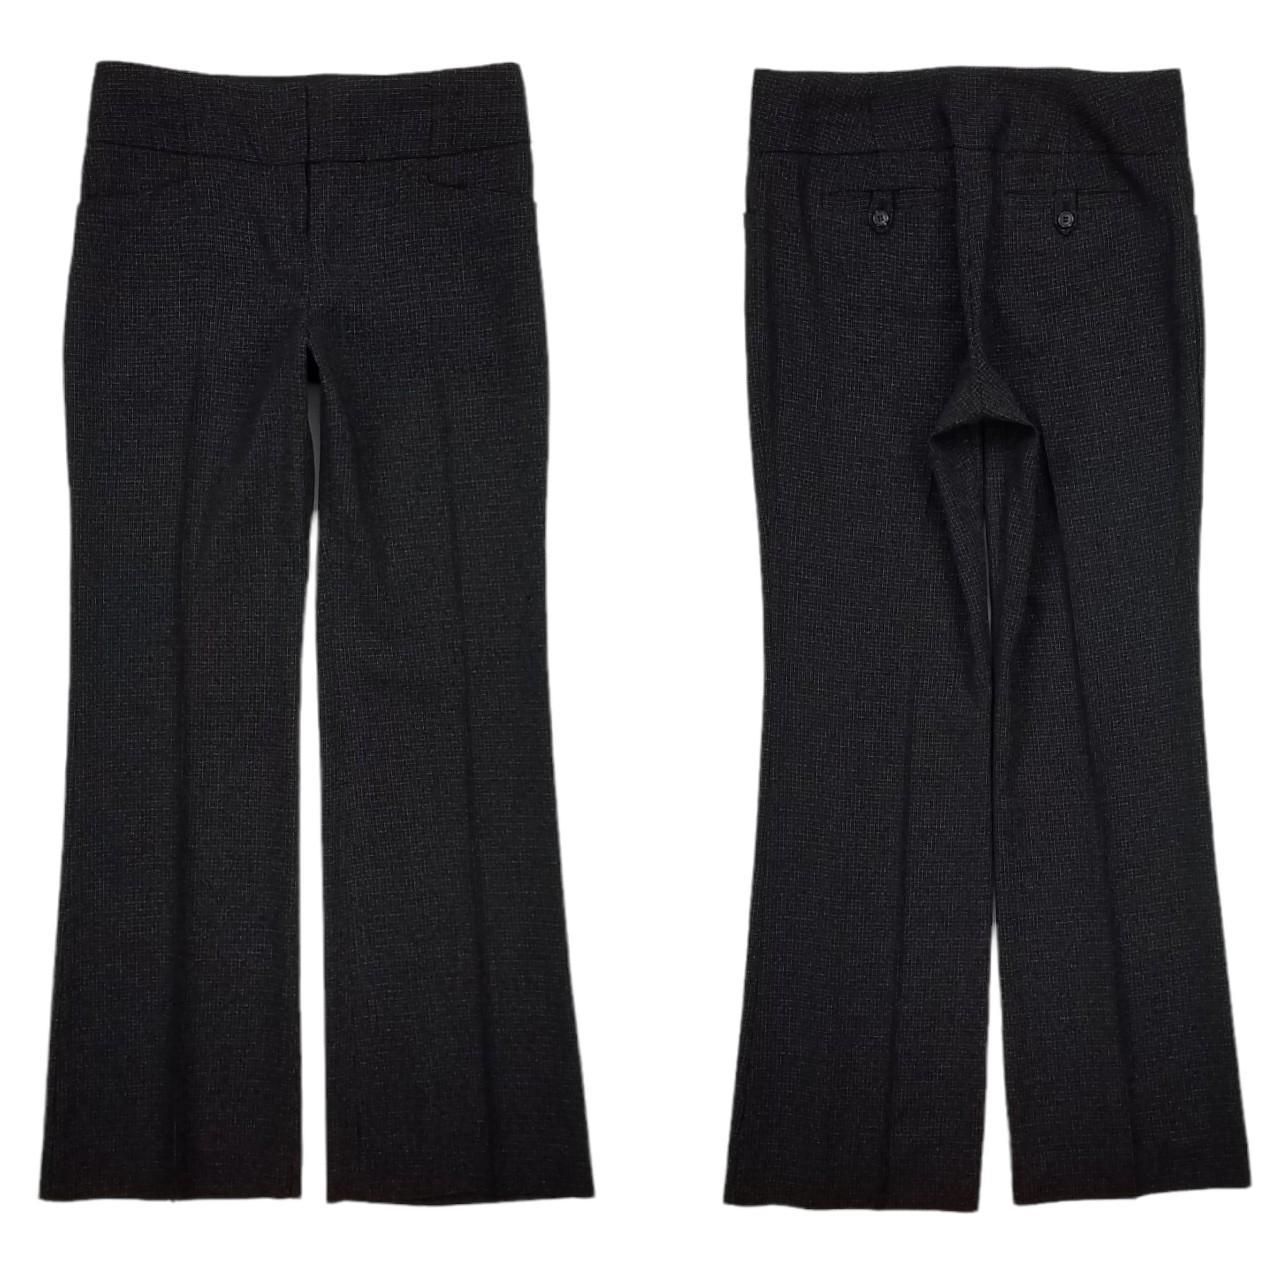 Philip Lim ladies black wool trousers with metal bar... - Depop